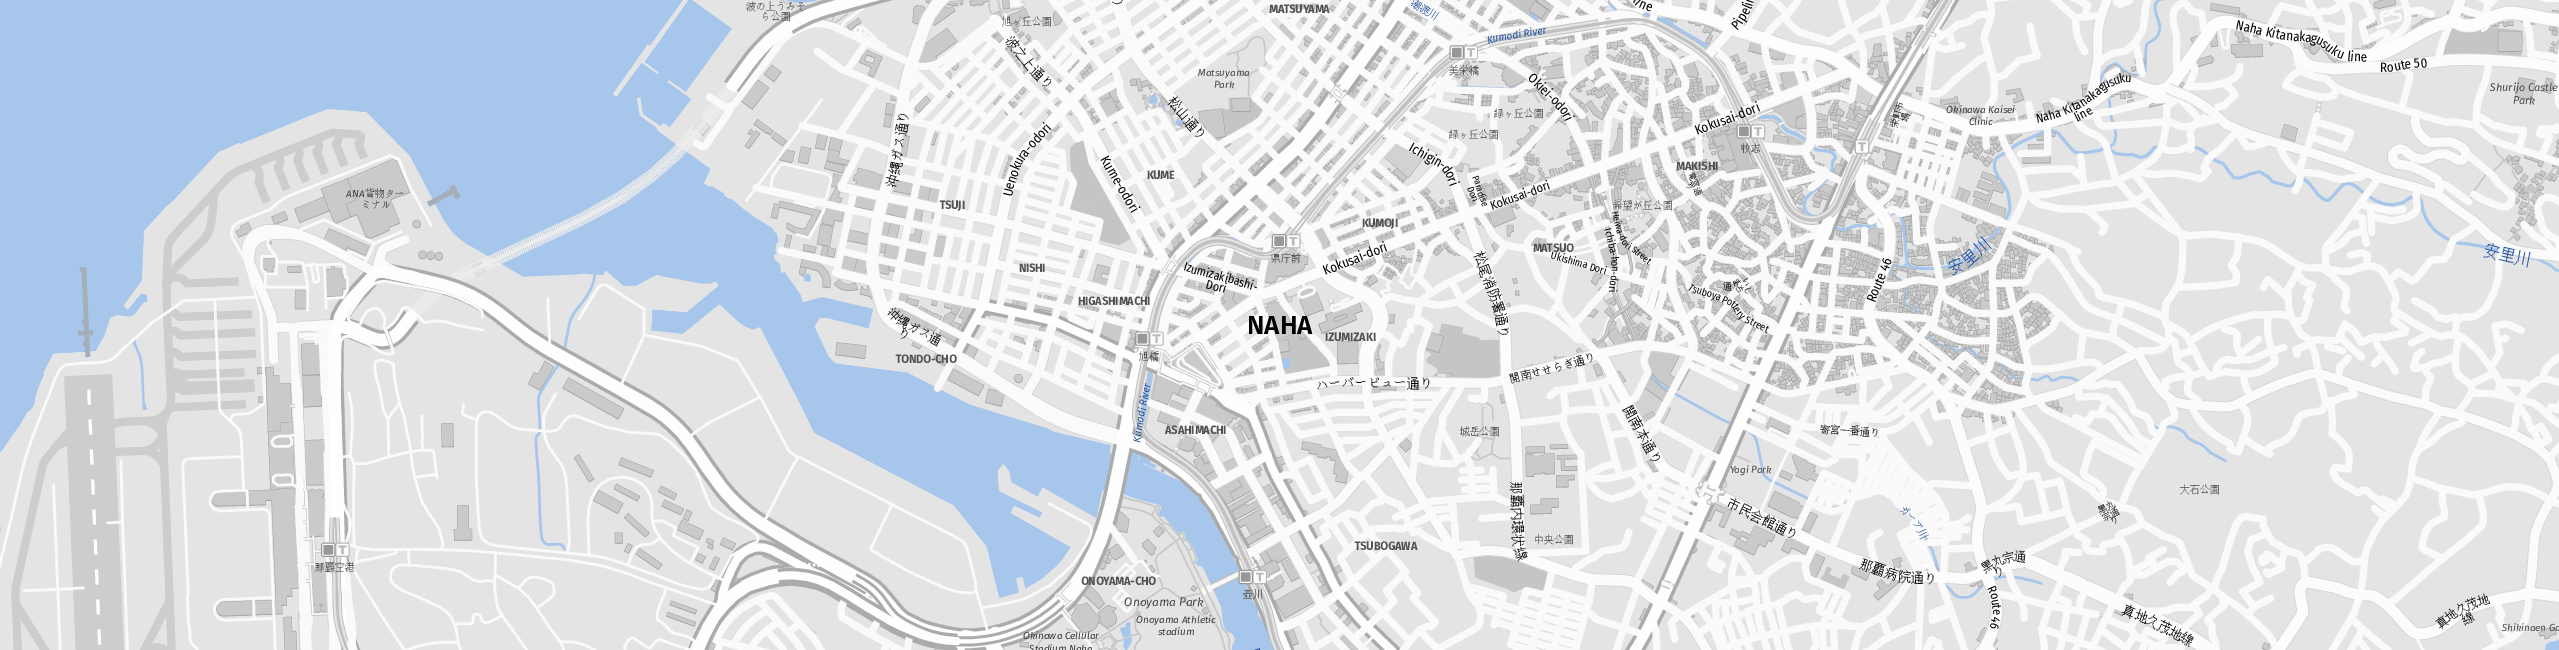 Stadtplan Naha zum Downloaden.